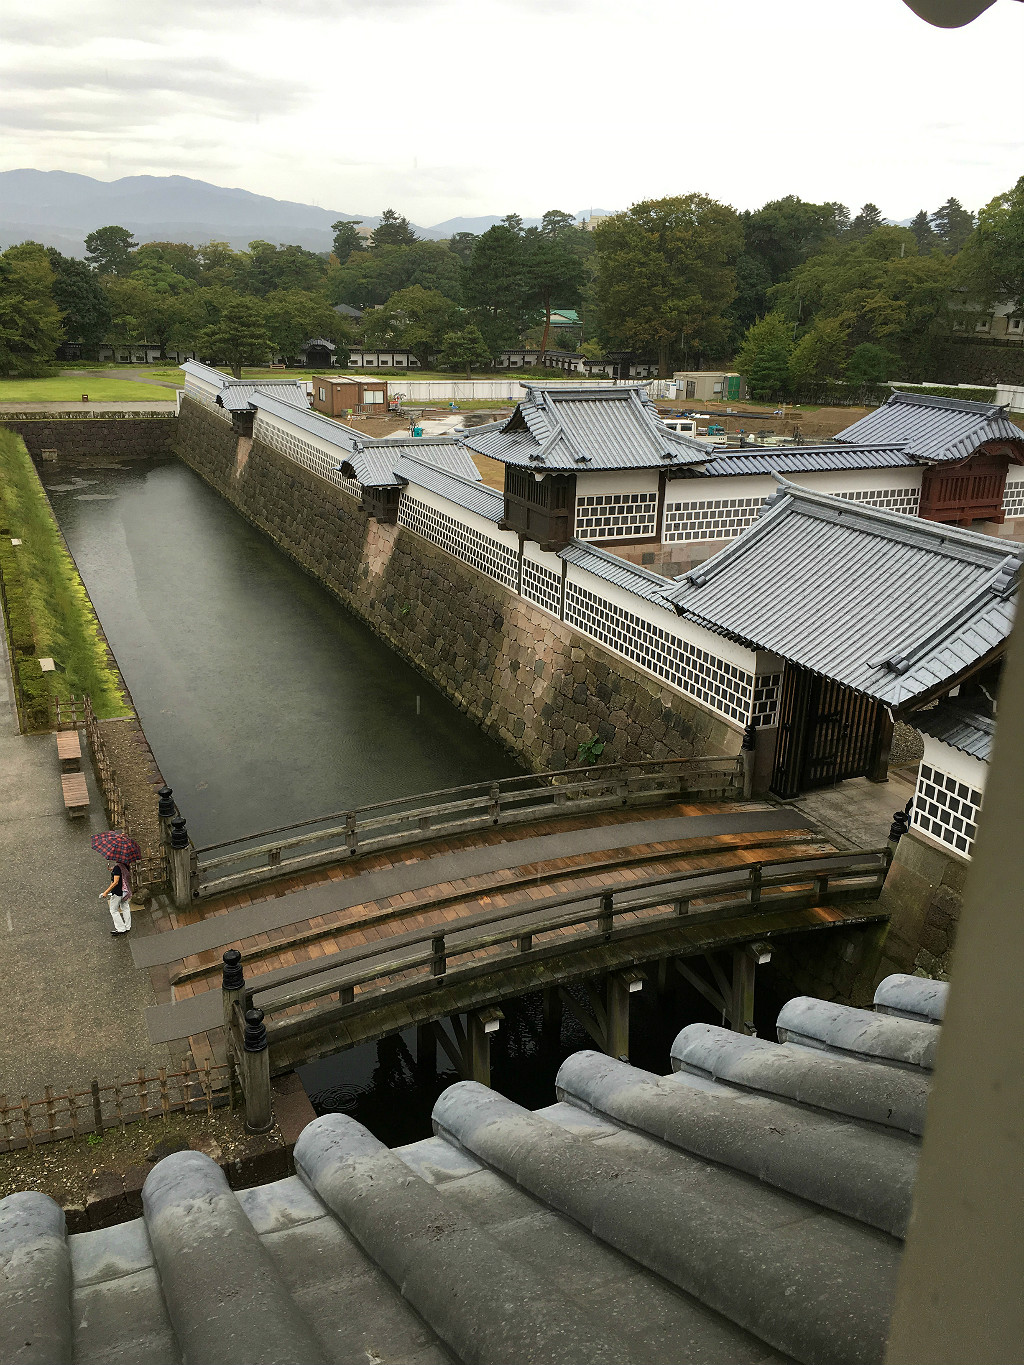 Within Kanazawa Castle, Aaron Maninno